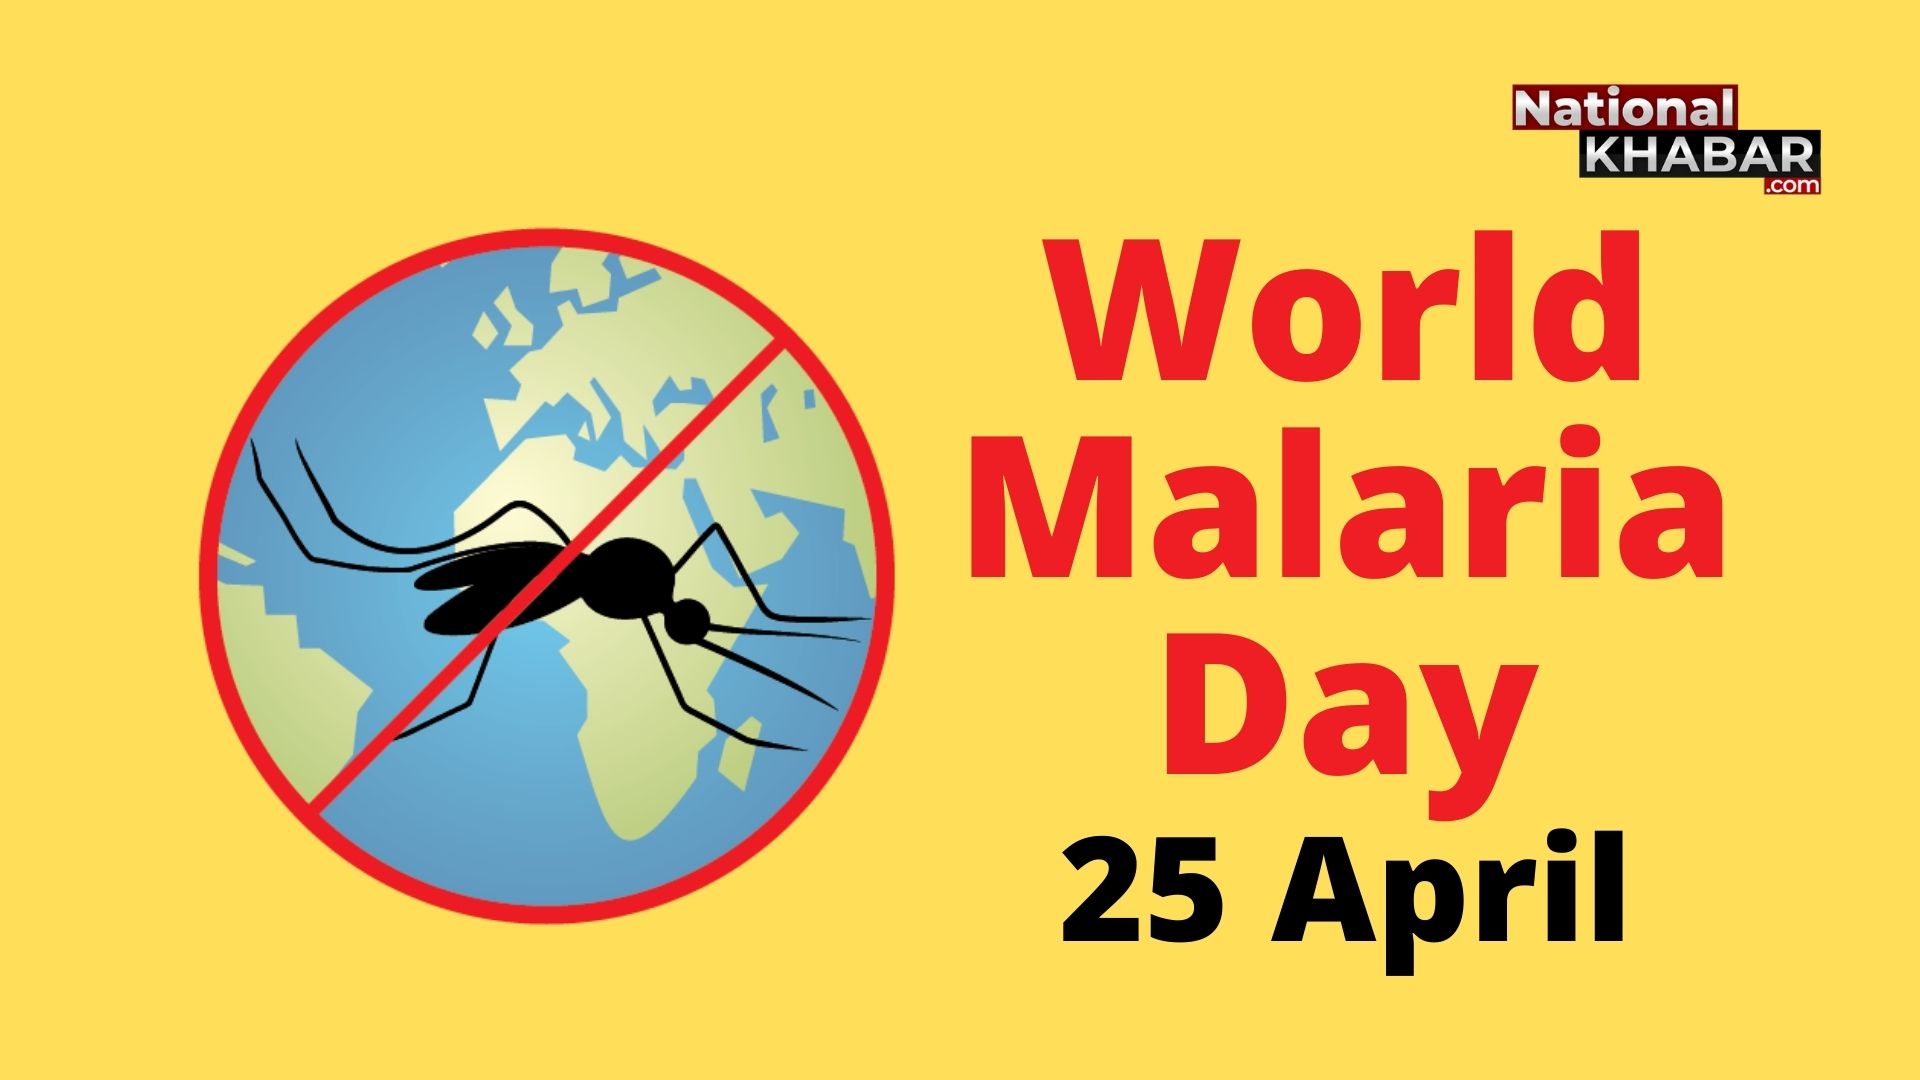 मलेरिया के प्रति जागरुकता को समर्पित एक दिन 25 अप्रैल, World Malaria Day